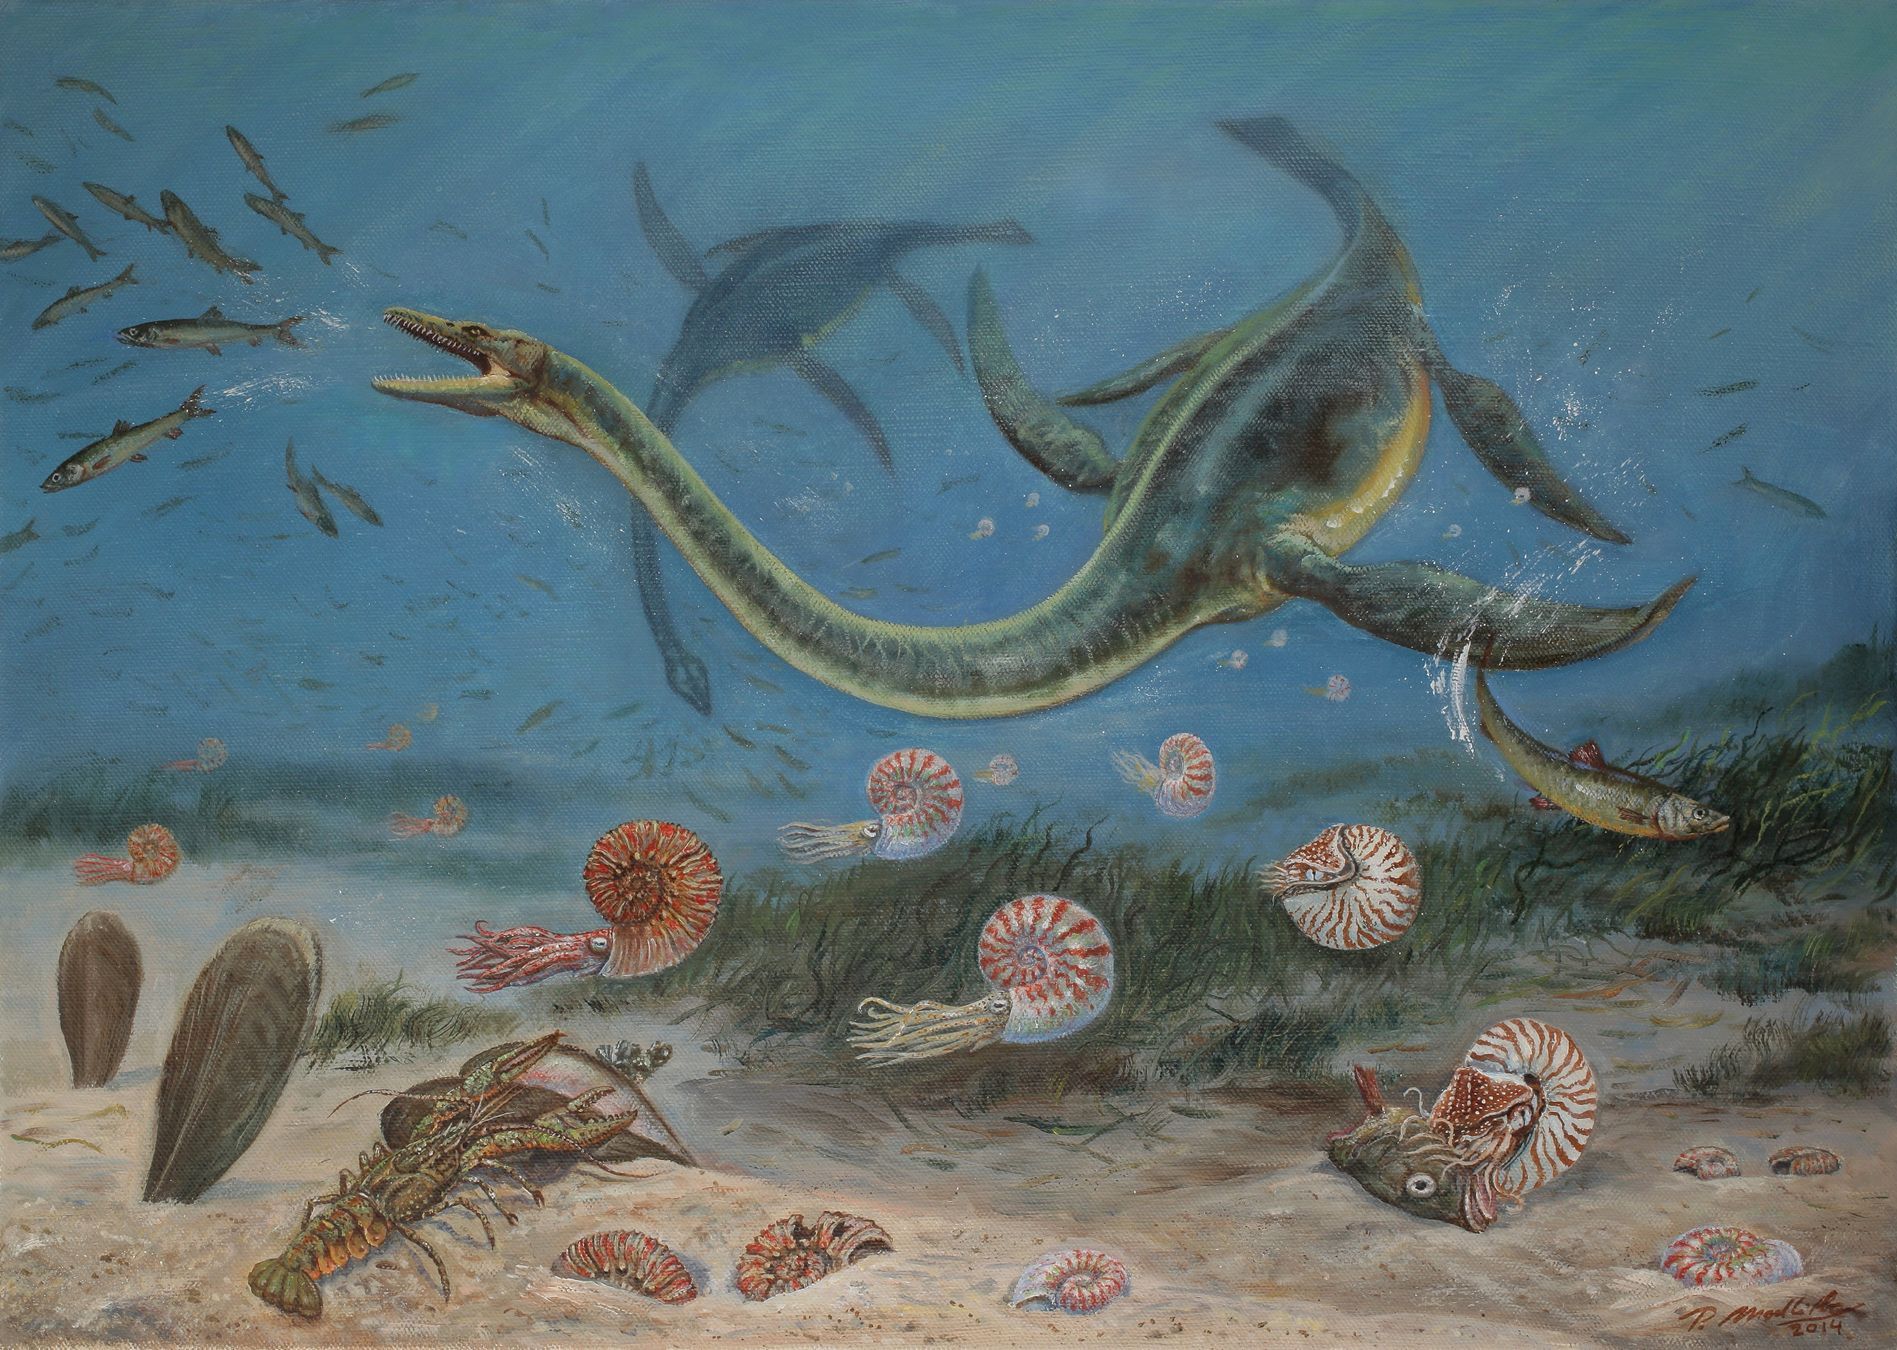 Древний океан 5 букв. Мезозойская Эра плезиозавры. Зденек Буриан Ихтиозавр. Меловой период мезозойской эры. Плезиозавр Эра и период.